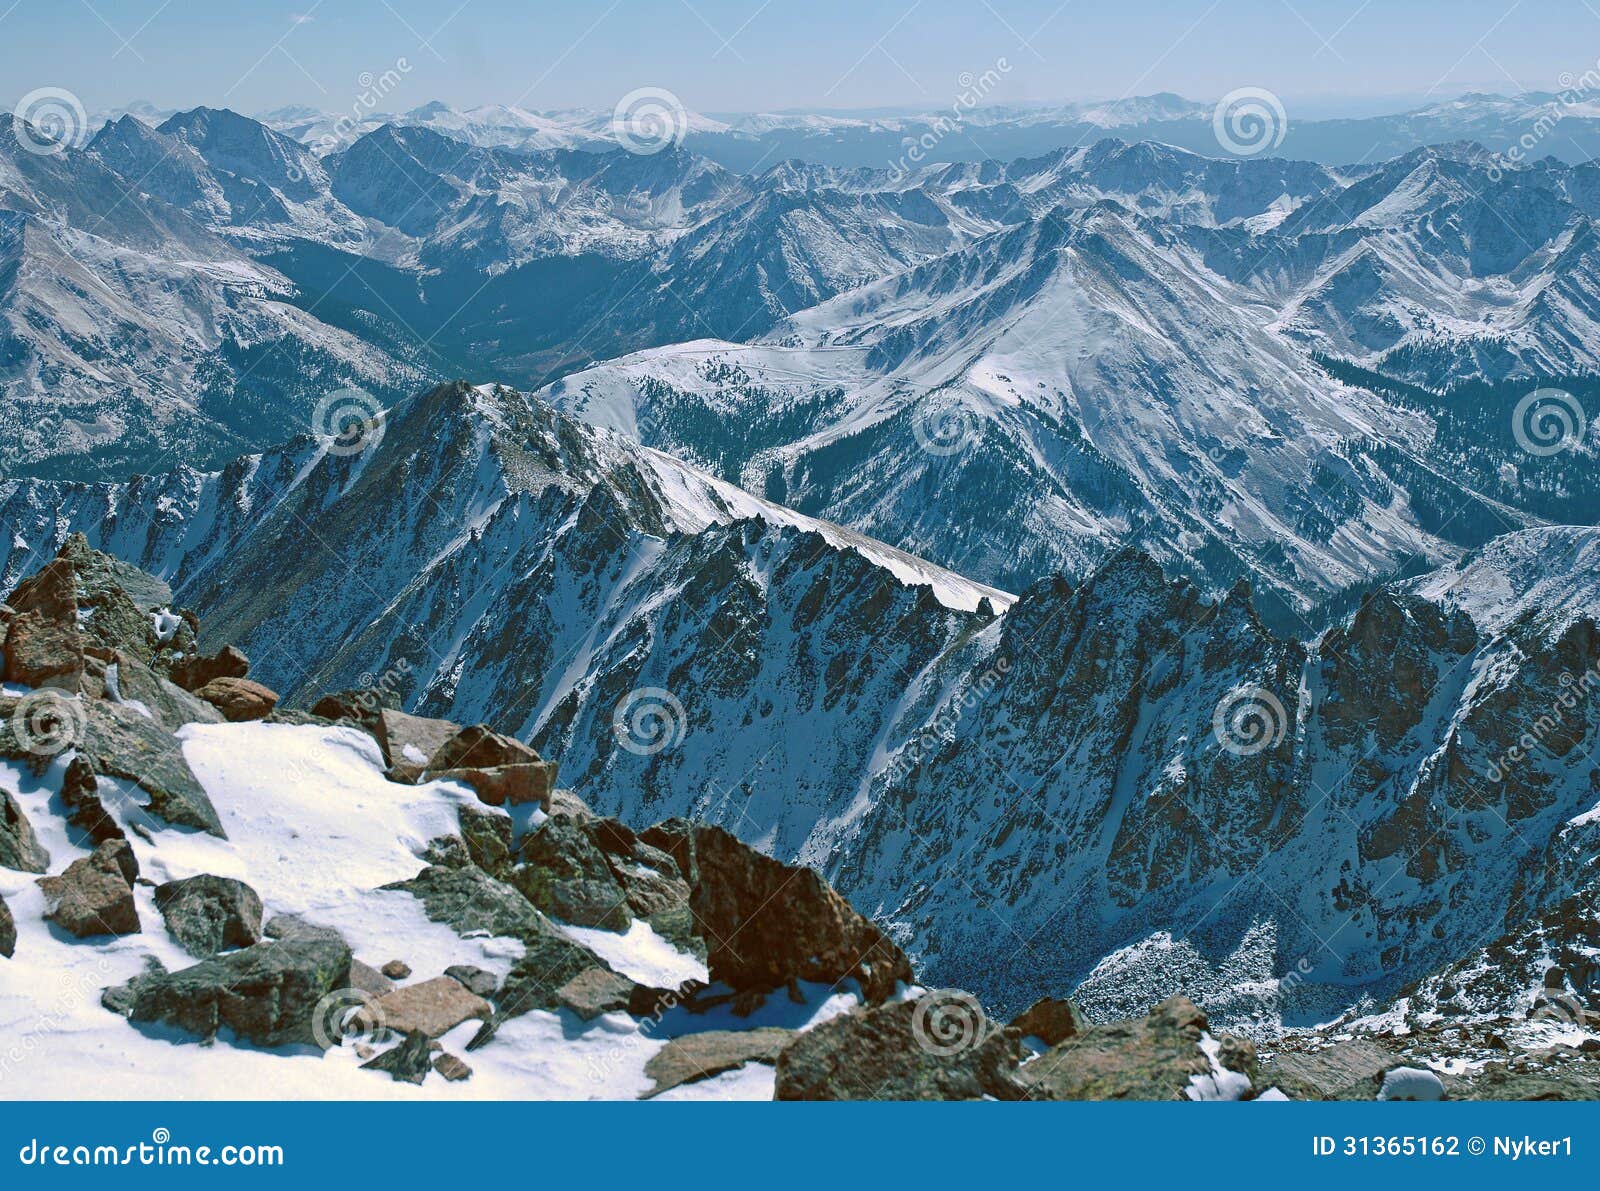 la plata peak, rocky mountains colorado